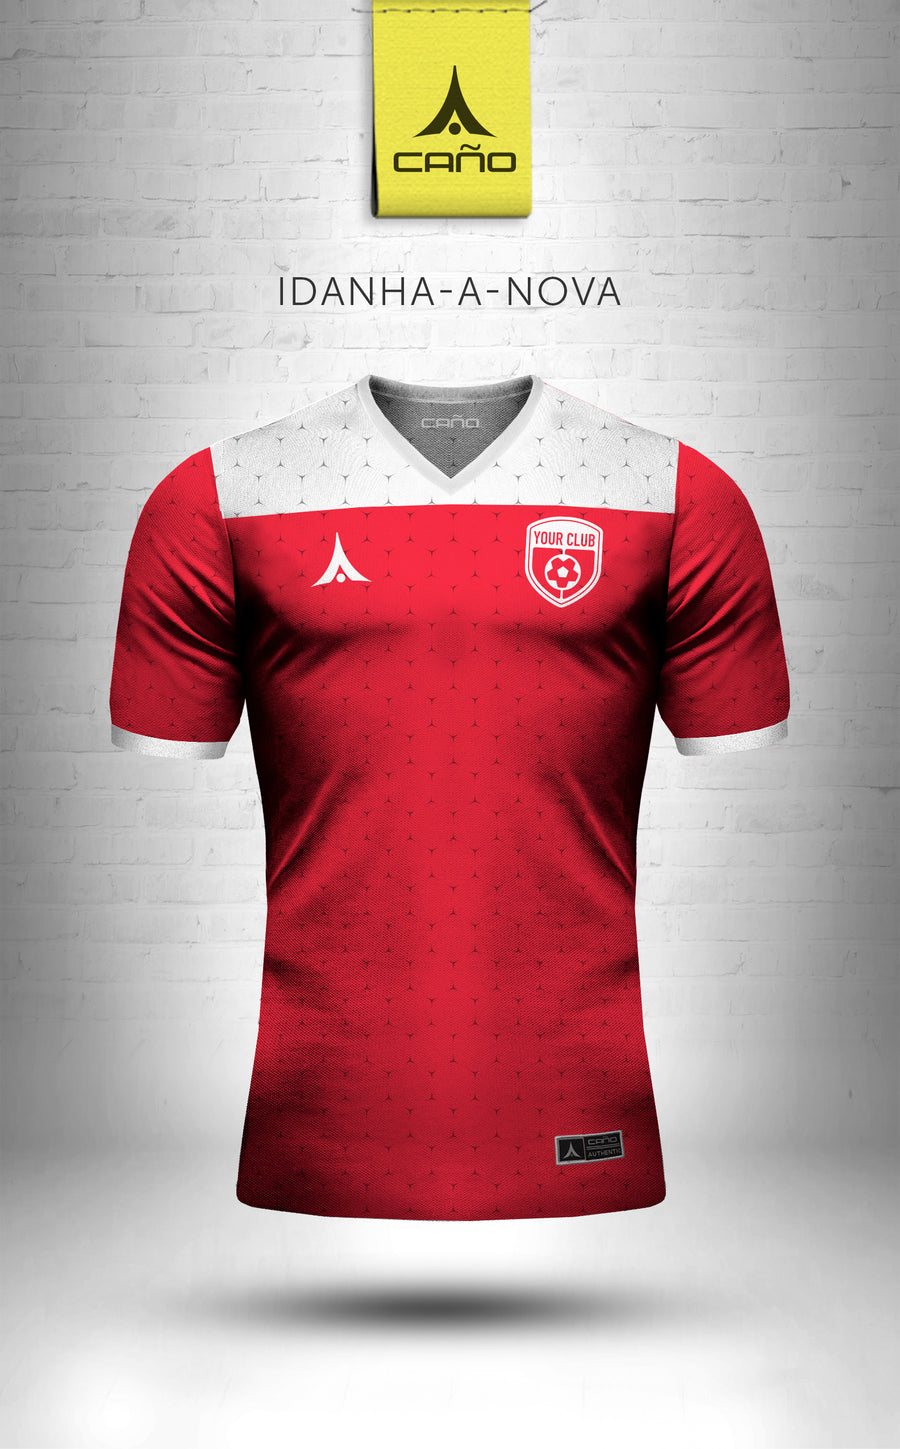 Idanha-a-Nova in red/white